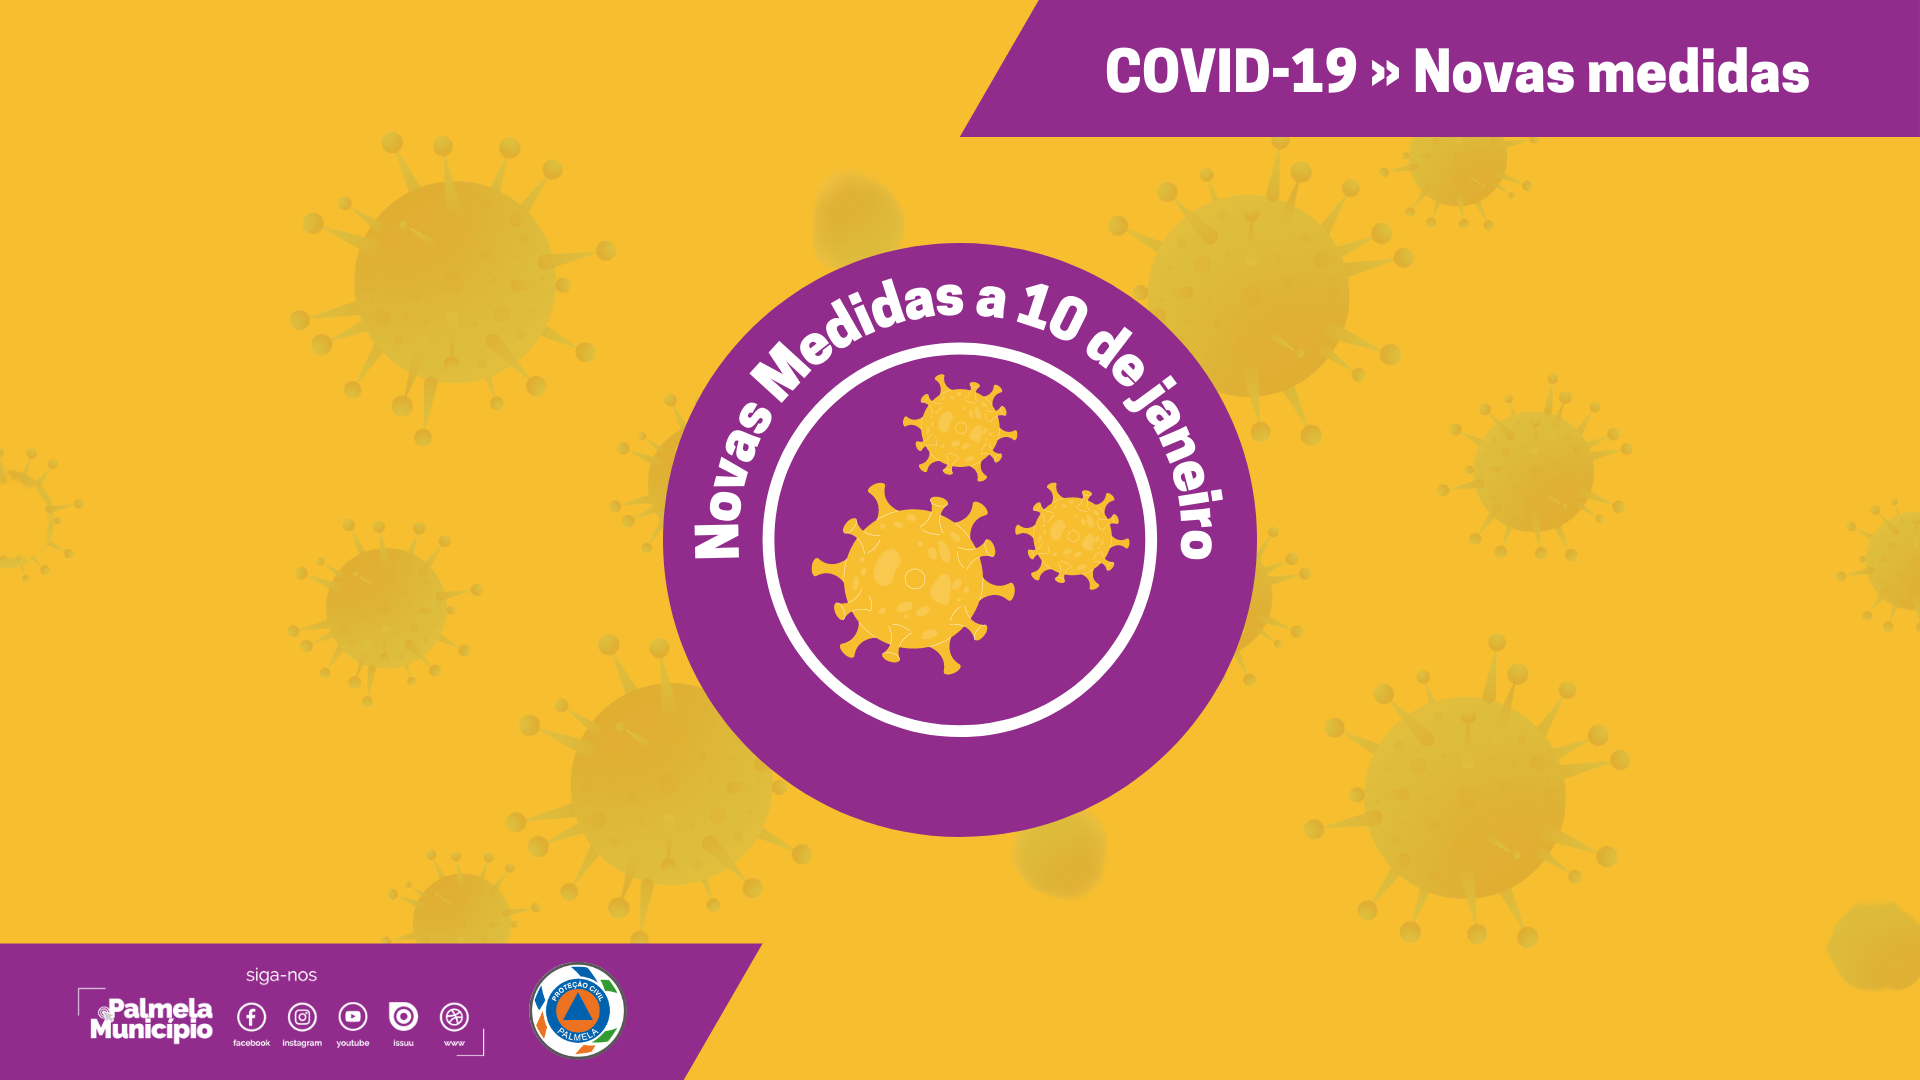 COVID-19: novas medidas de contenção - 10 de janeiro